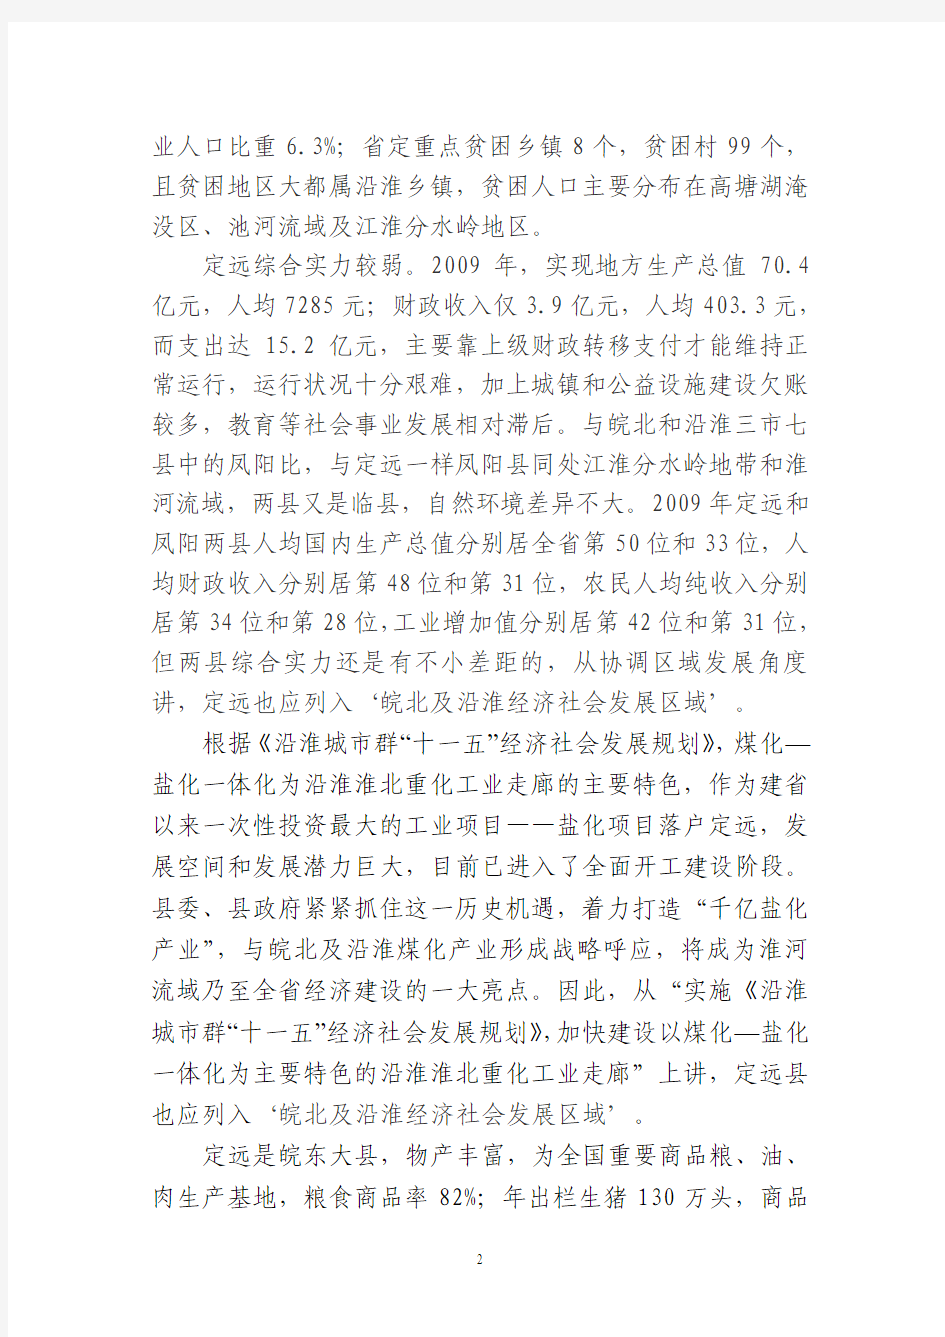 关于要求将定远县列入皖北经济发展区(2010.9.28)